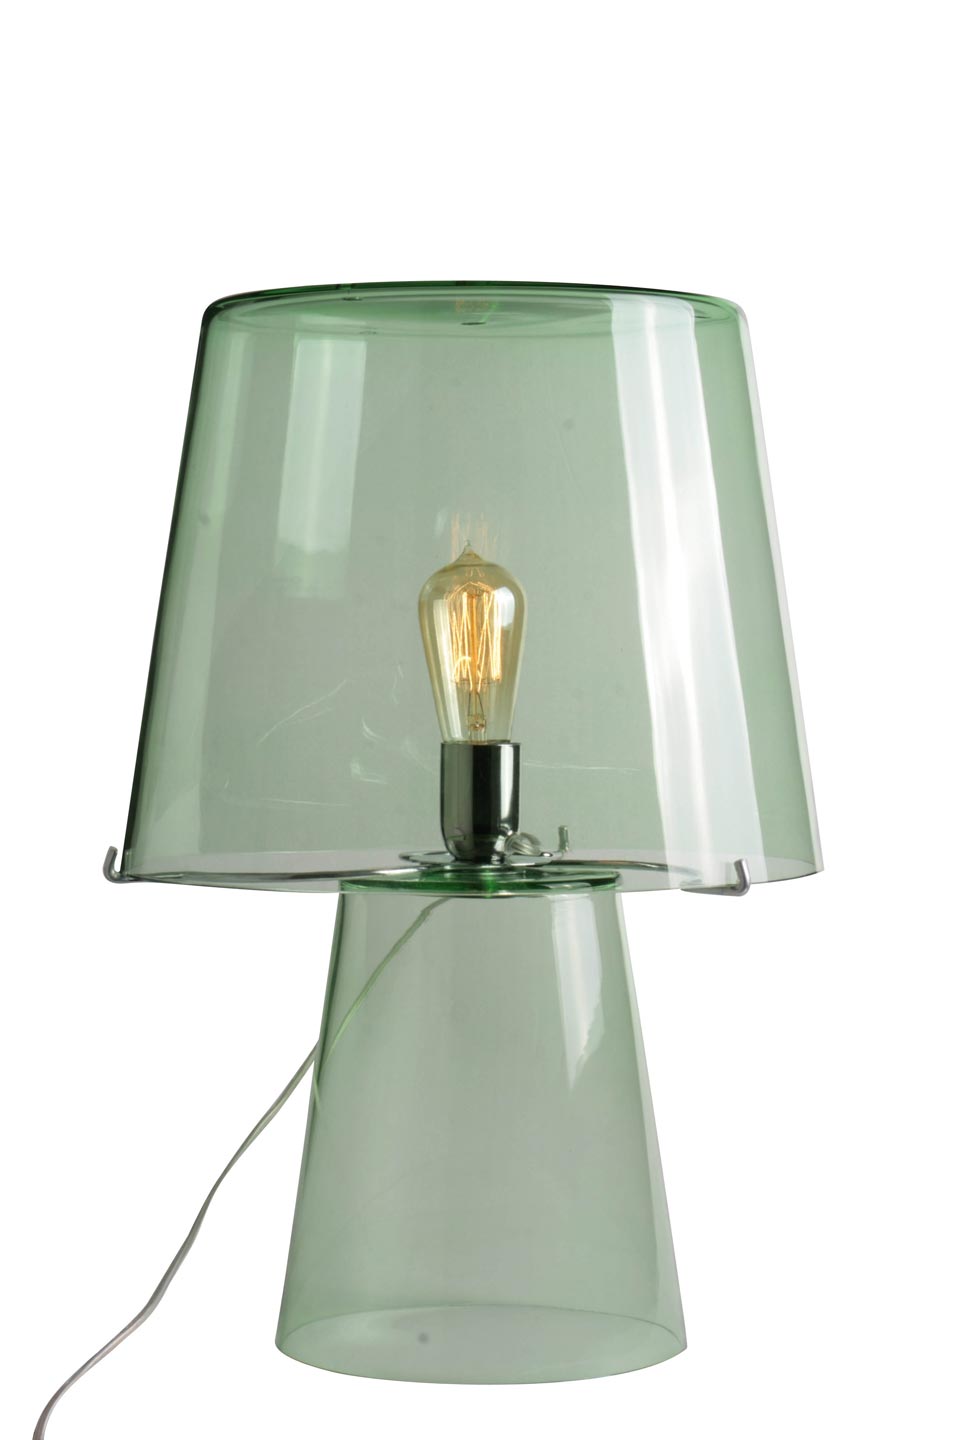 Hermes Retro Table Lamp In Light Green Glass Luminaire Concept Verre Ref 19050040